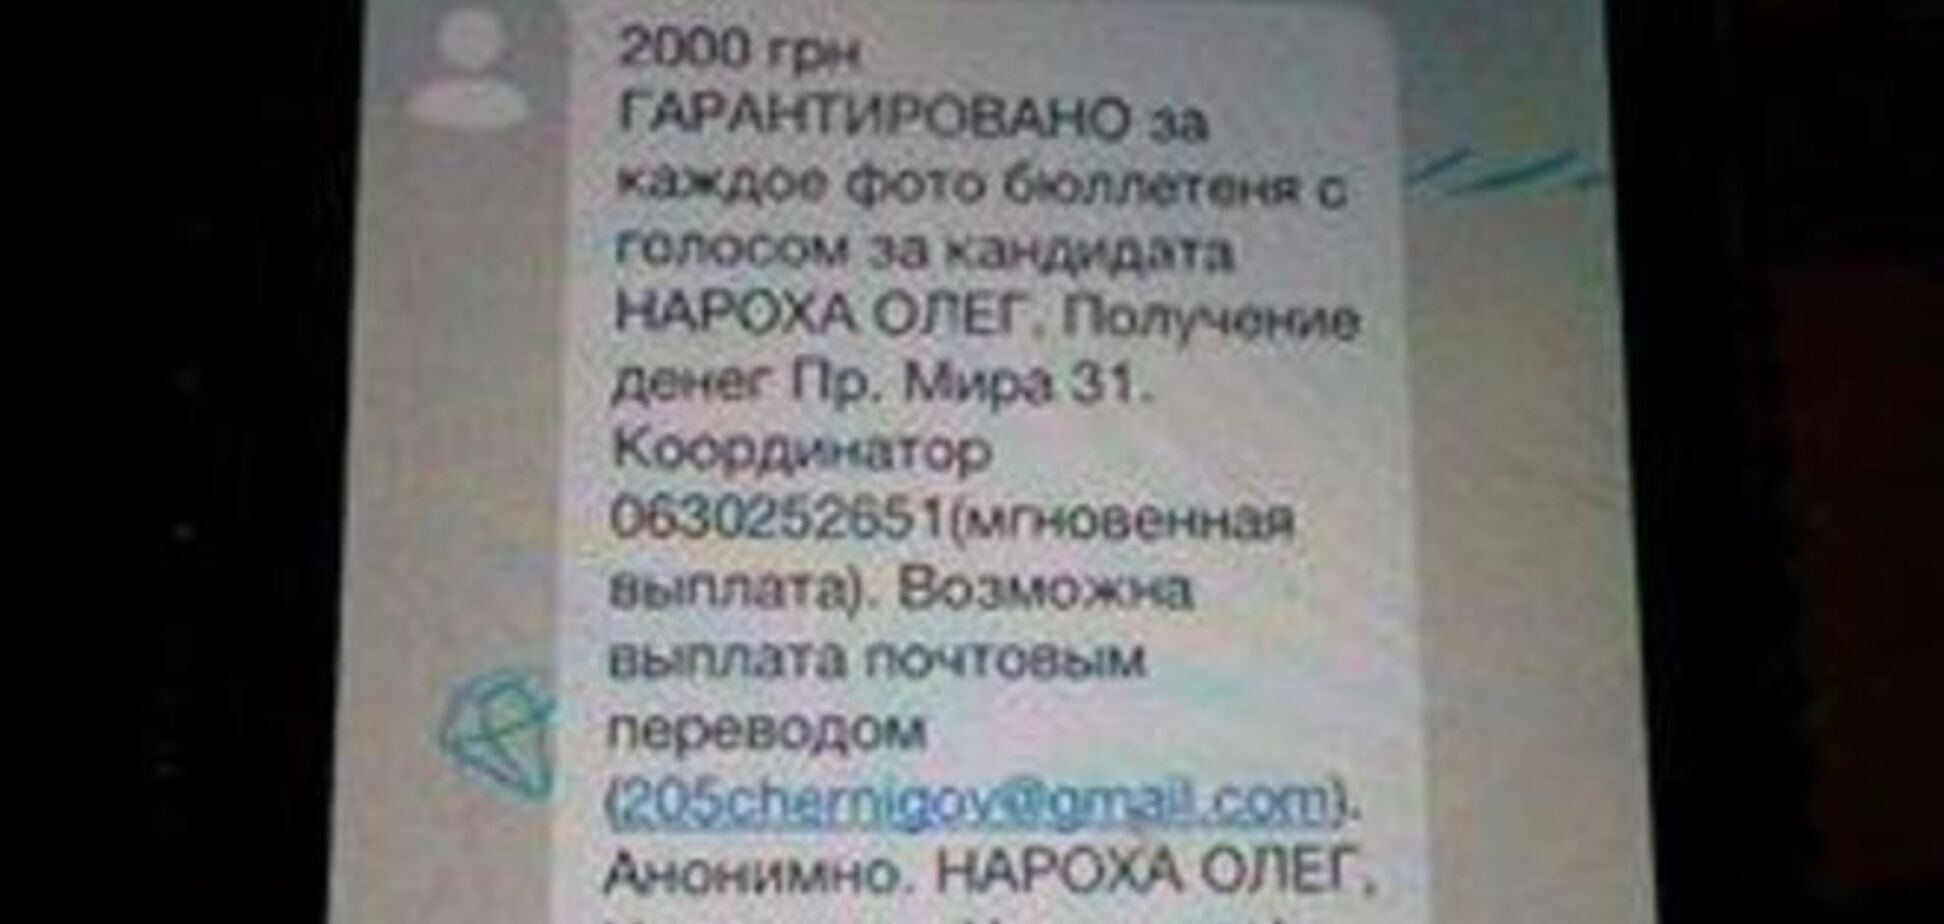 У Чернігові виборцям пропонують продати голос за 2000 грн: фотофакт